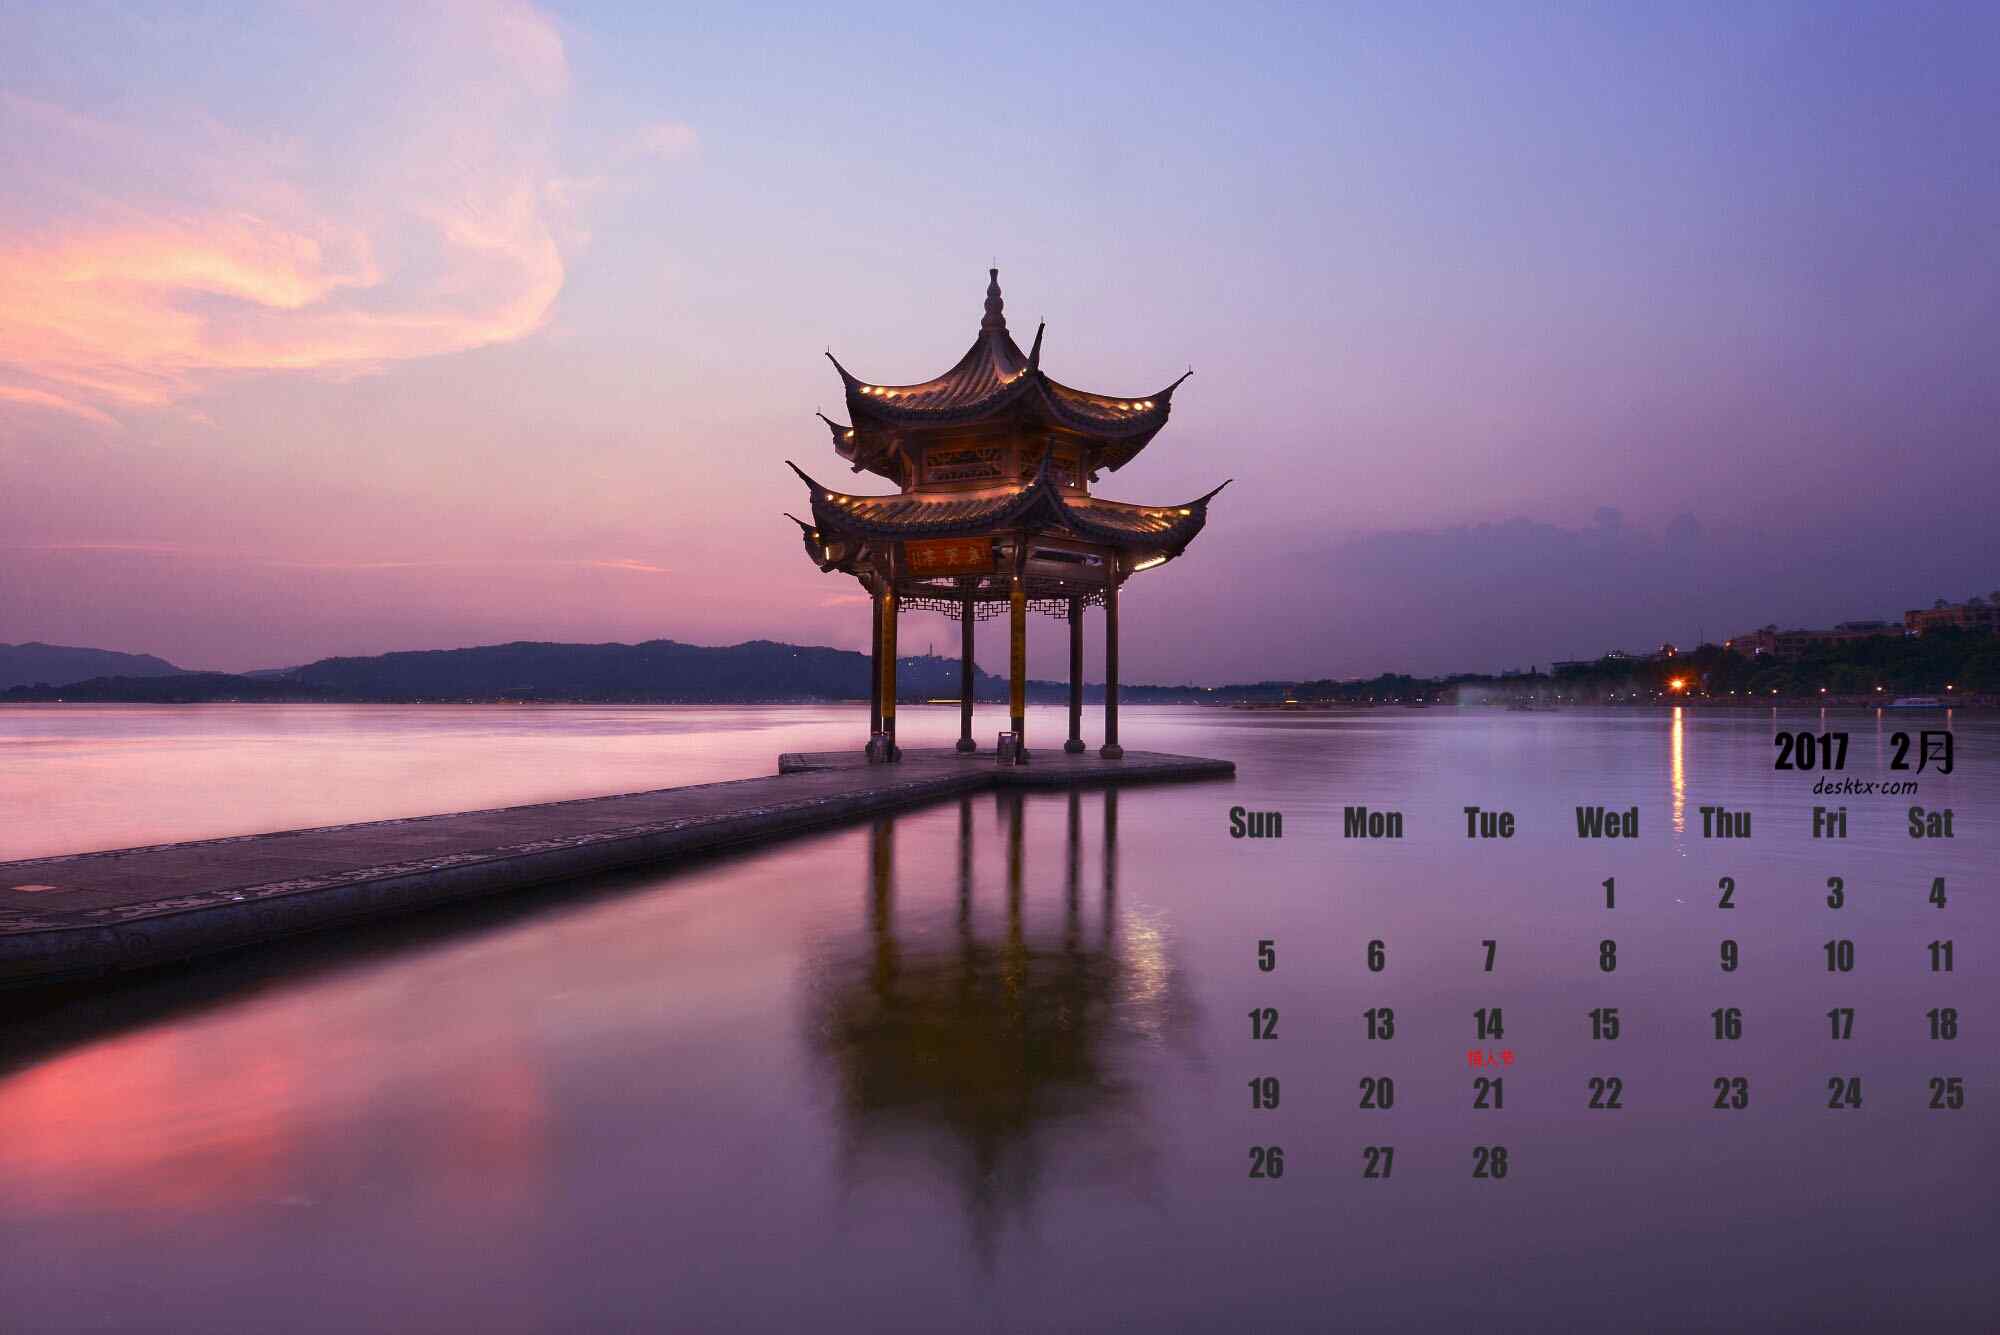 2017年2月日历壁纸之杭州西湖美景